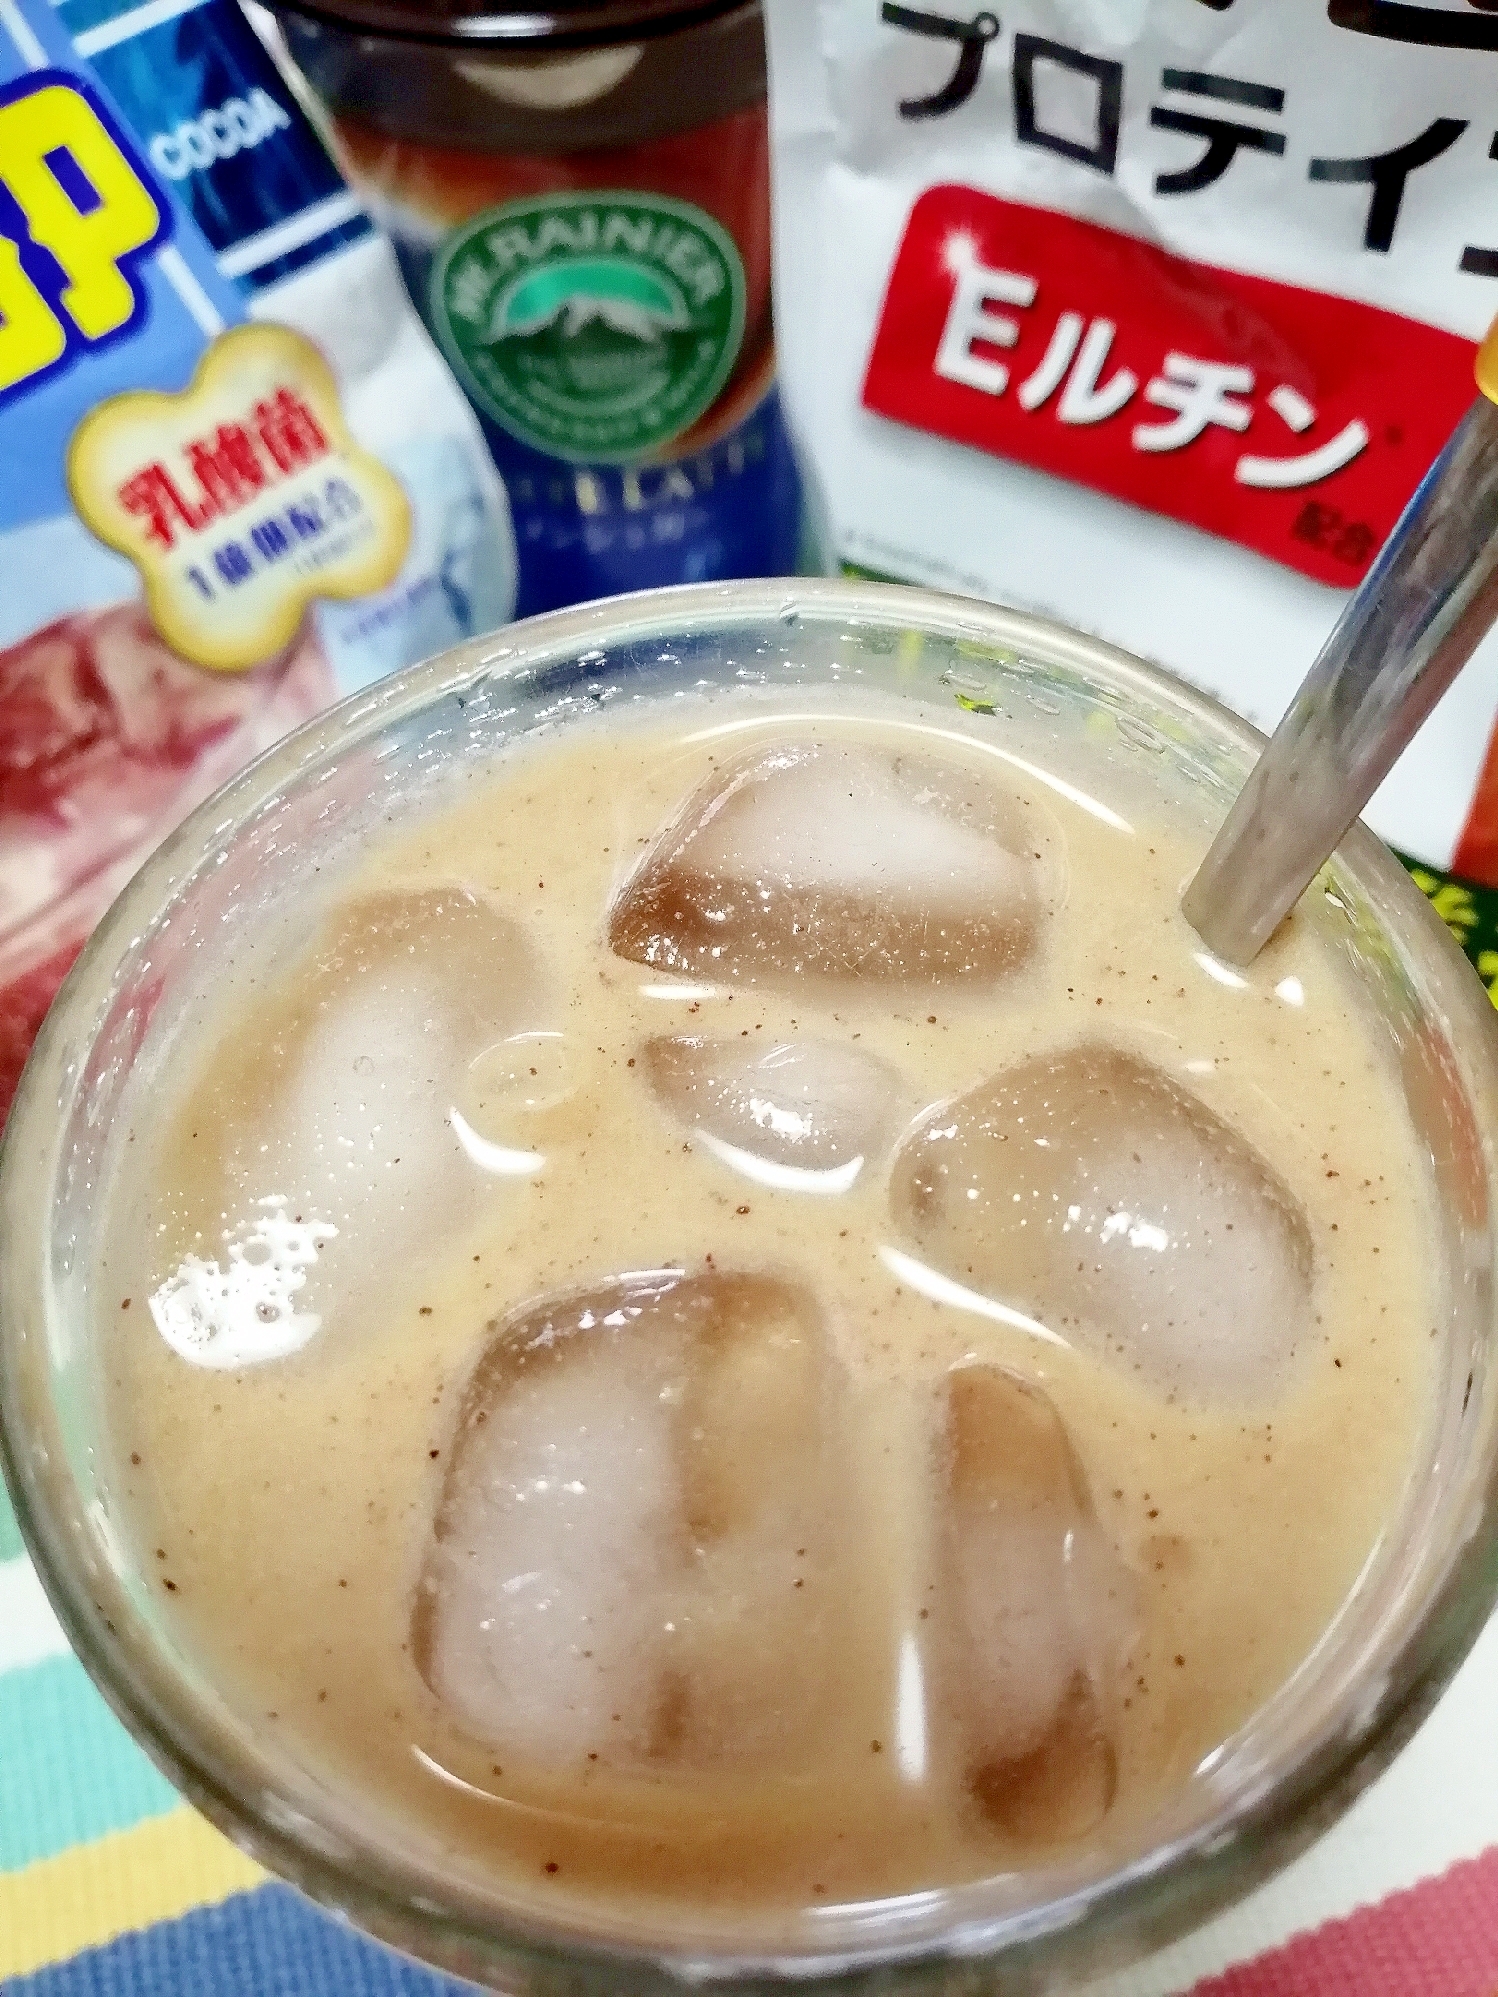 アイス☆大豆プロテインカフェモカ♪